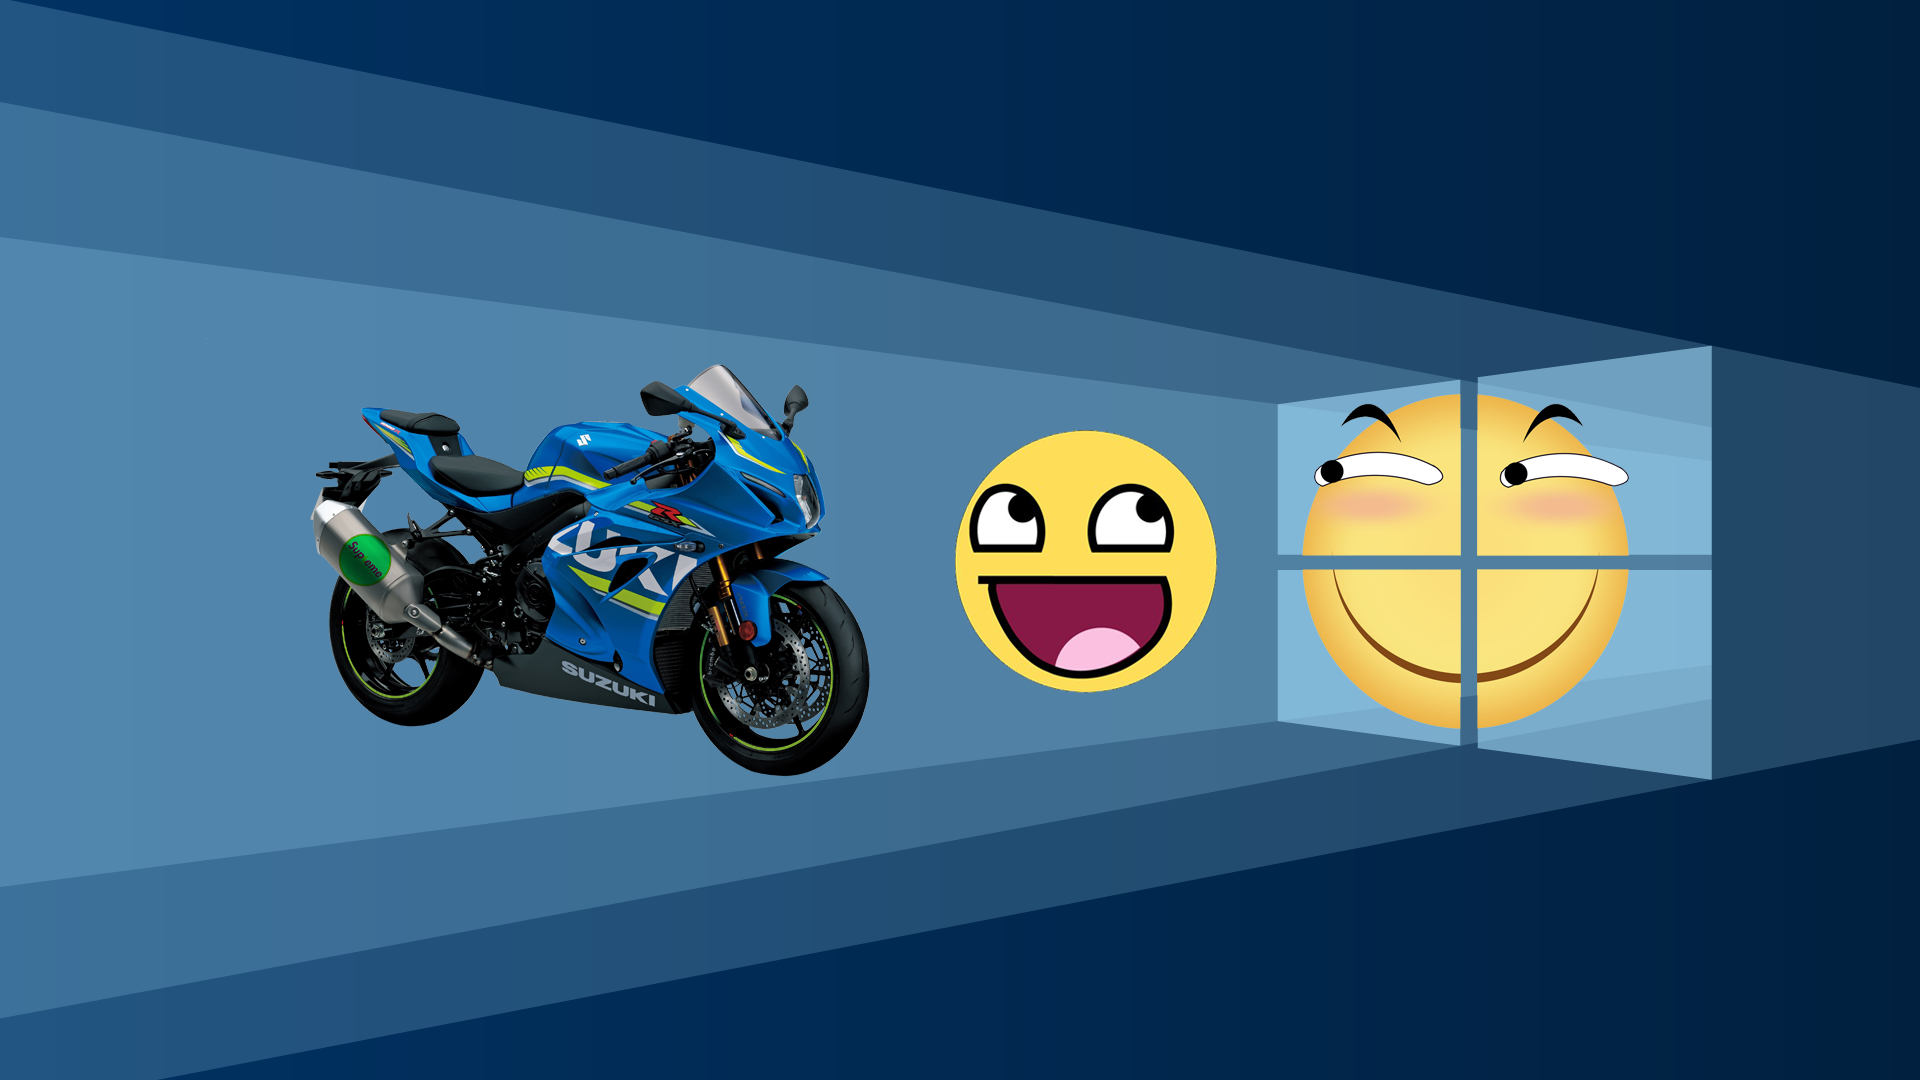 Humor Smiley Motorcycle Vehicle 1920x1080